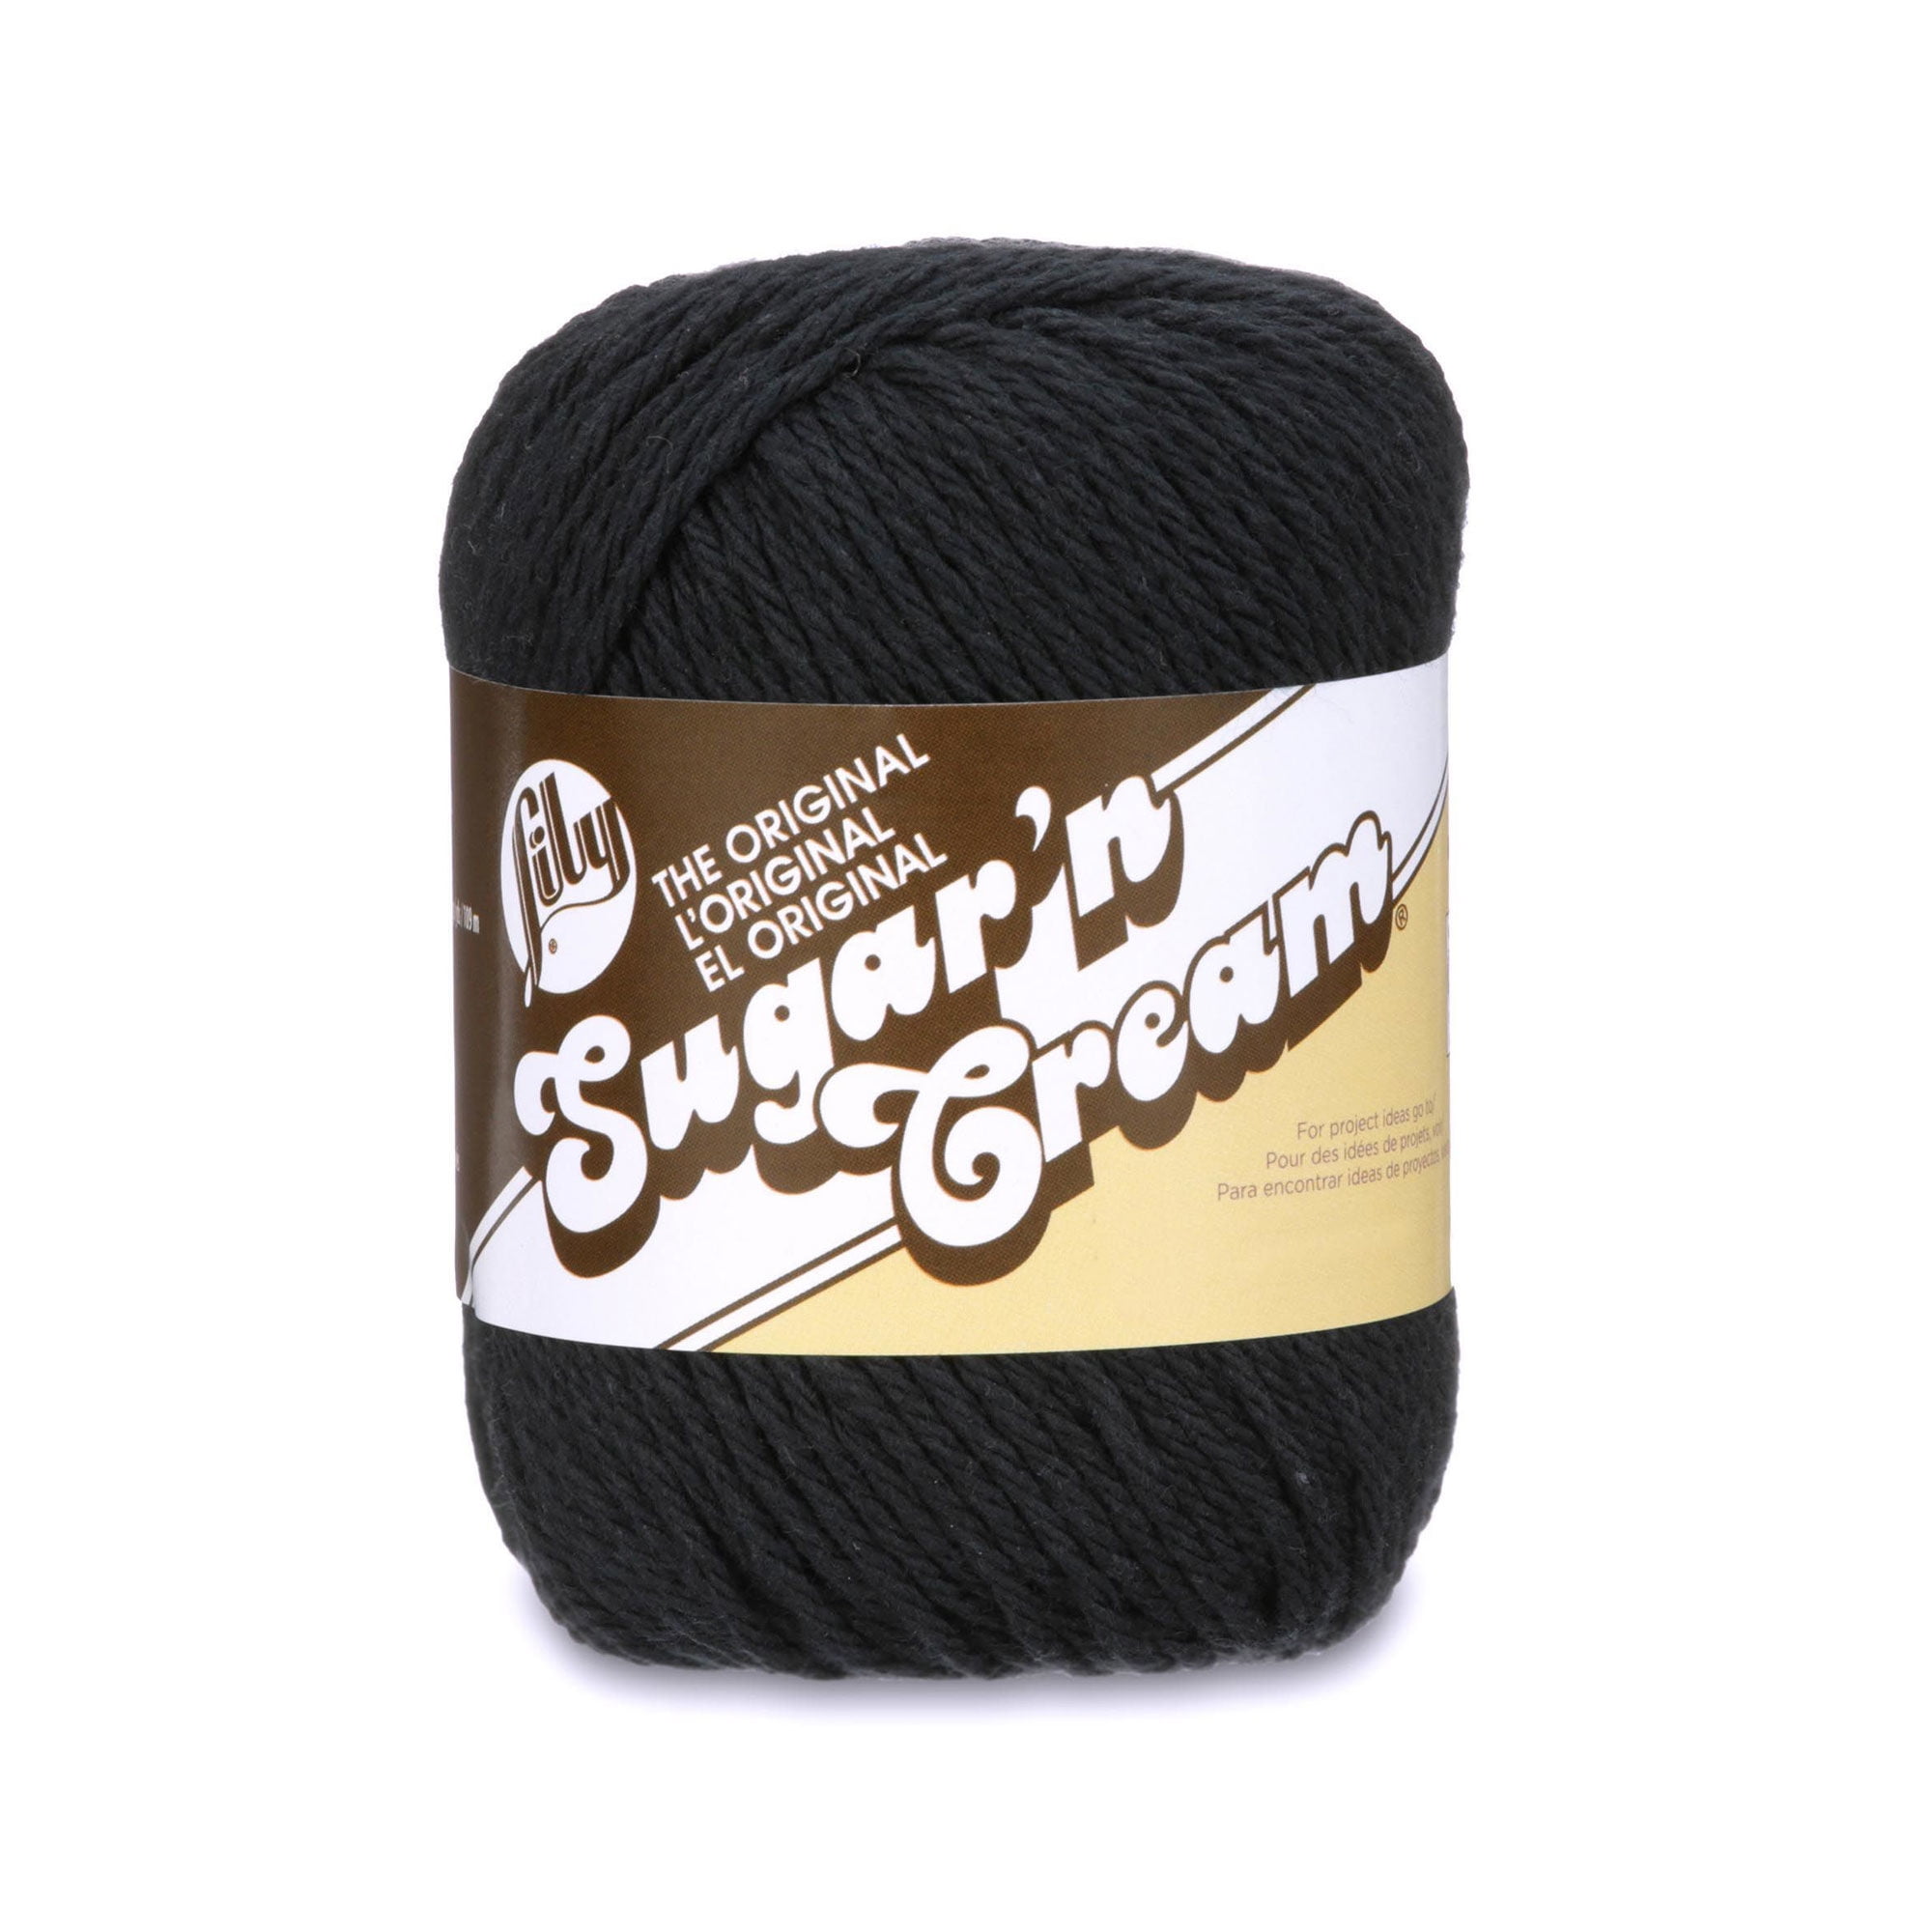 pack Of 3) Lily Sugar'n Cream Yarn - Solids-black : Target